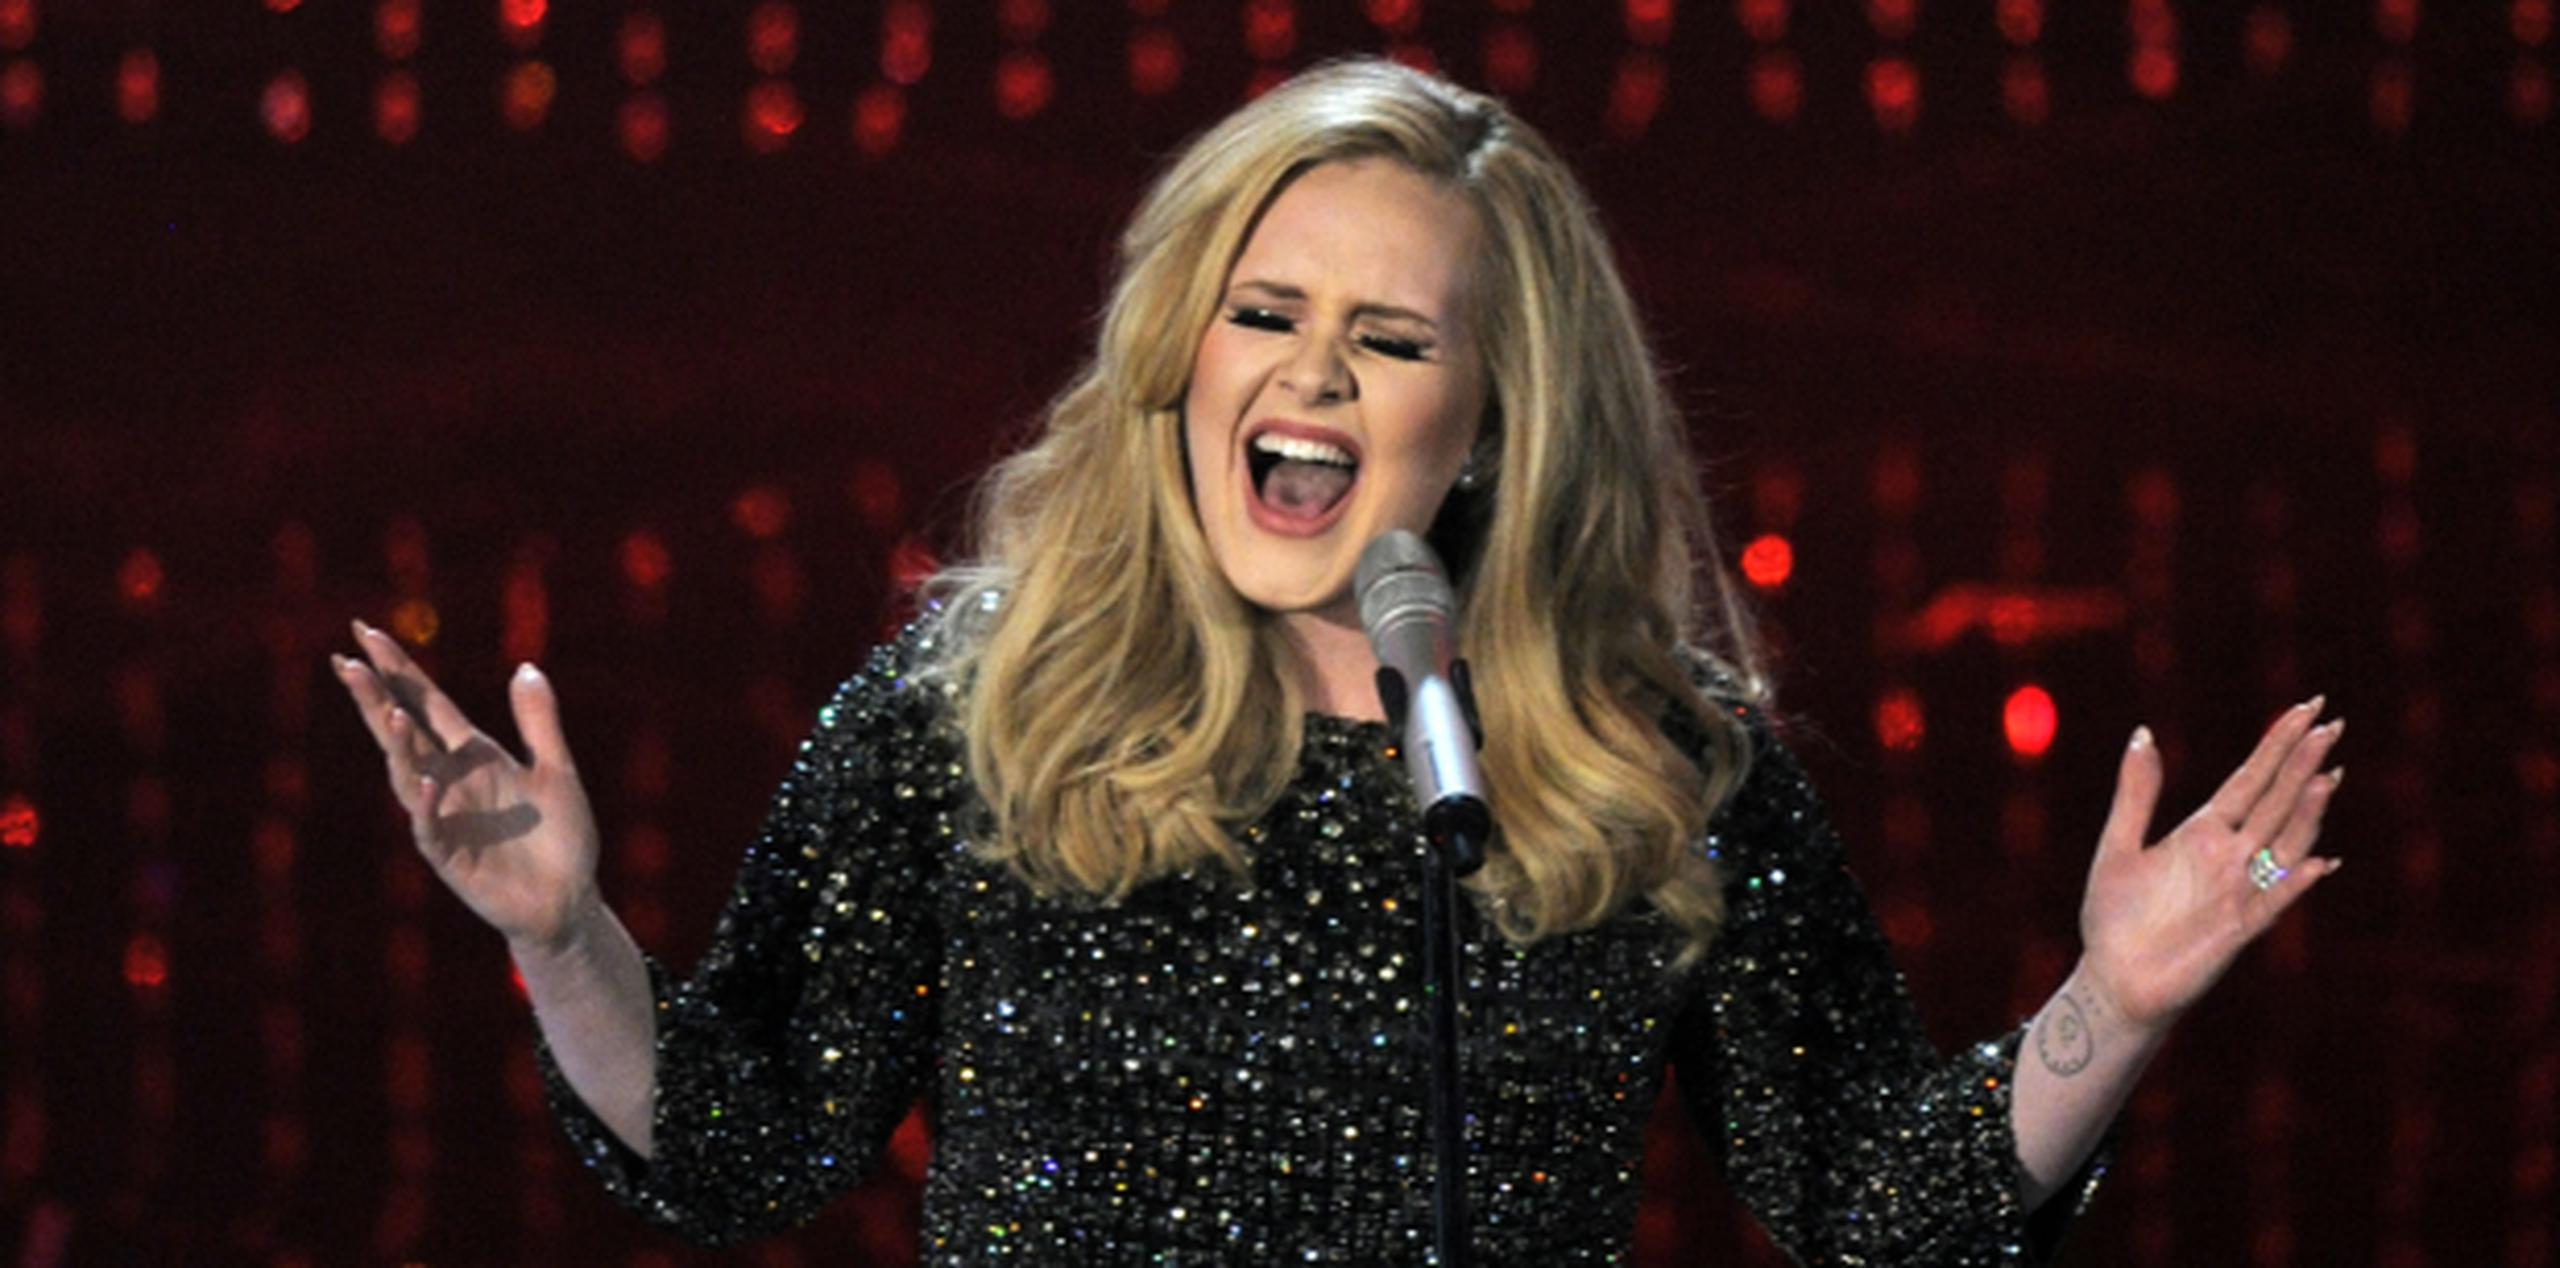 Dos tercios de adolescentes dijeron que escuchaban música -en la imagen Adele- todos los días, y el 58% dijo que veía televisión, según el estudio. (AP)